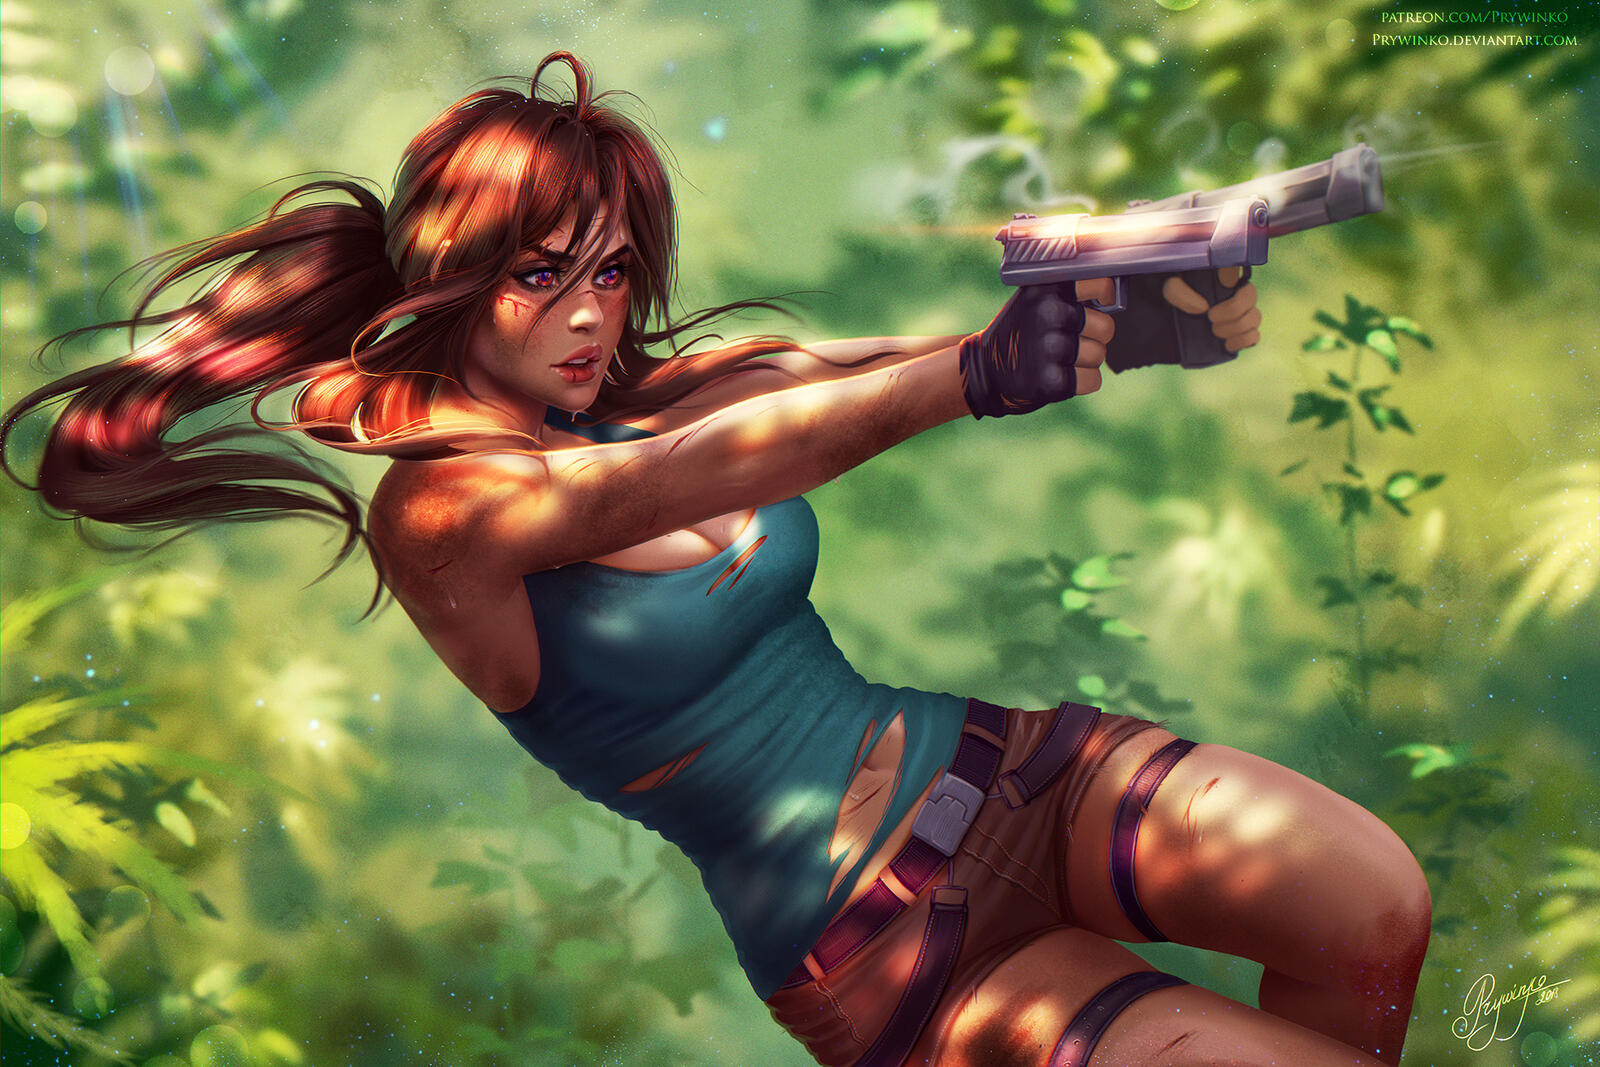 Бесплатное фото Рисунок девушка Лары Крофт в джунглях с пистолетами